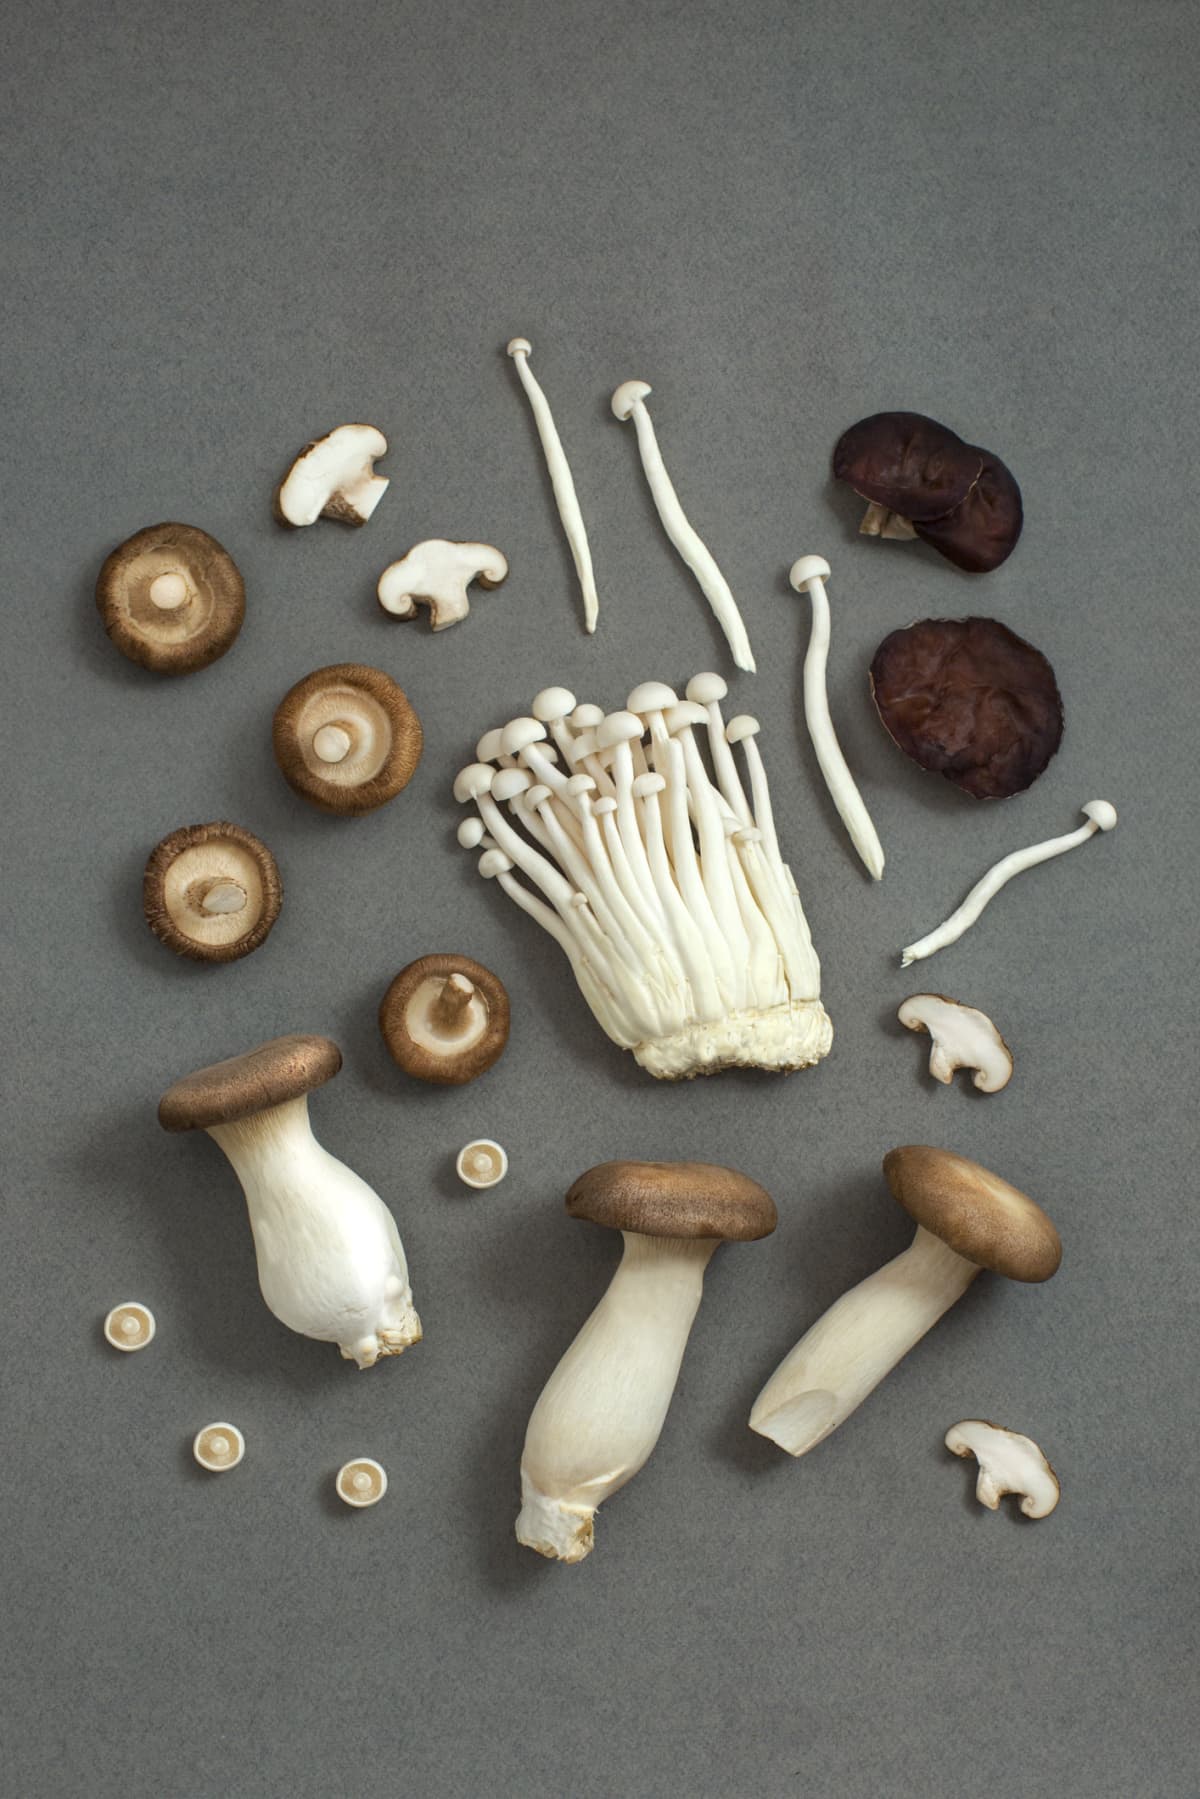 Mixed mushrooms. Top view, flat lay